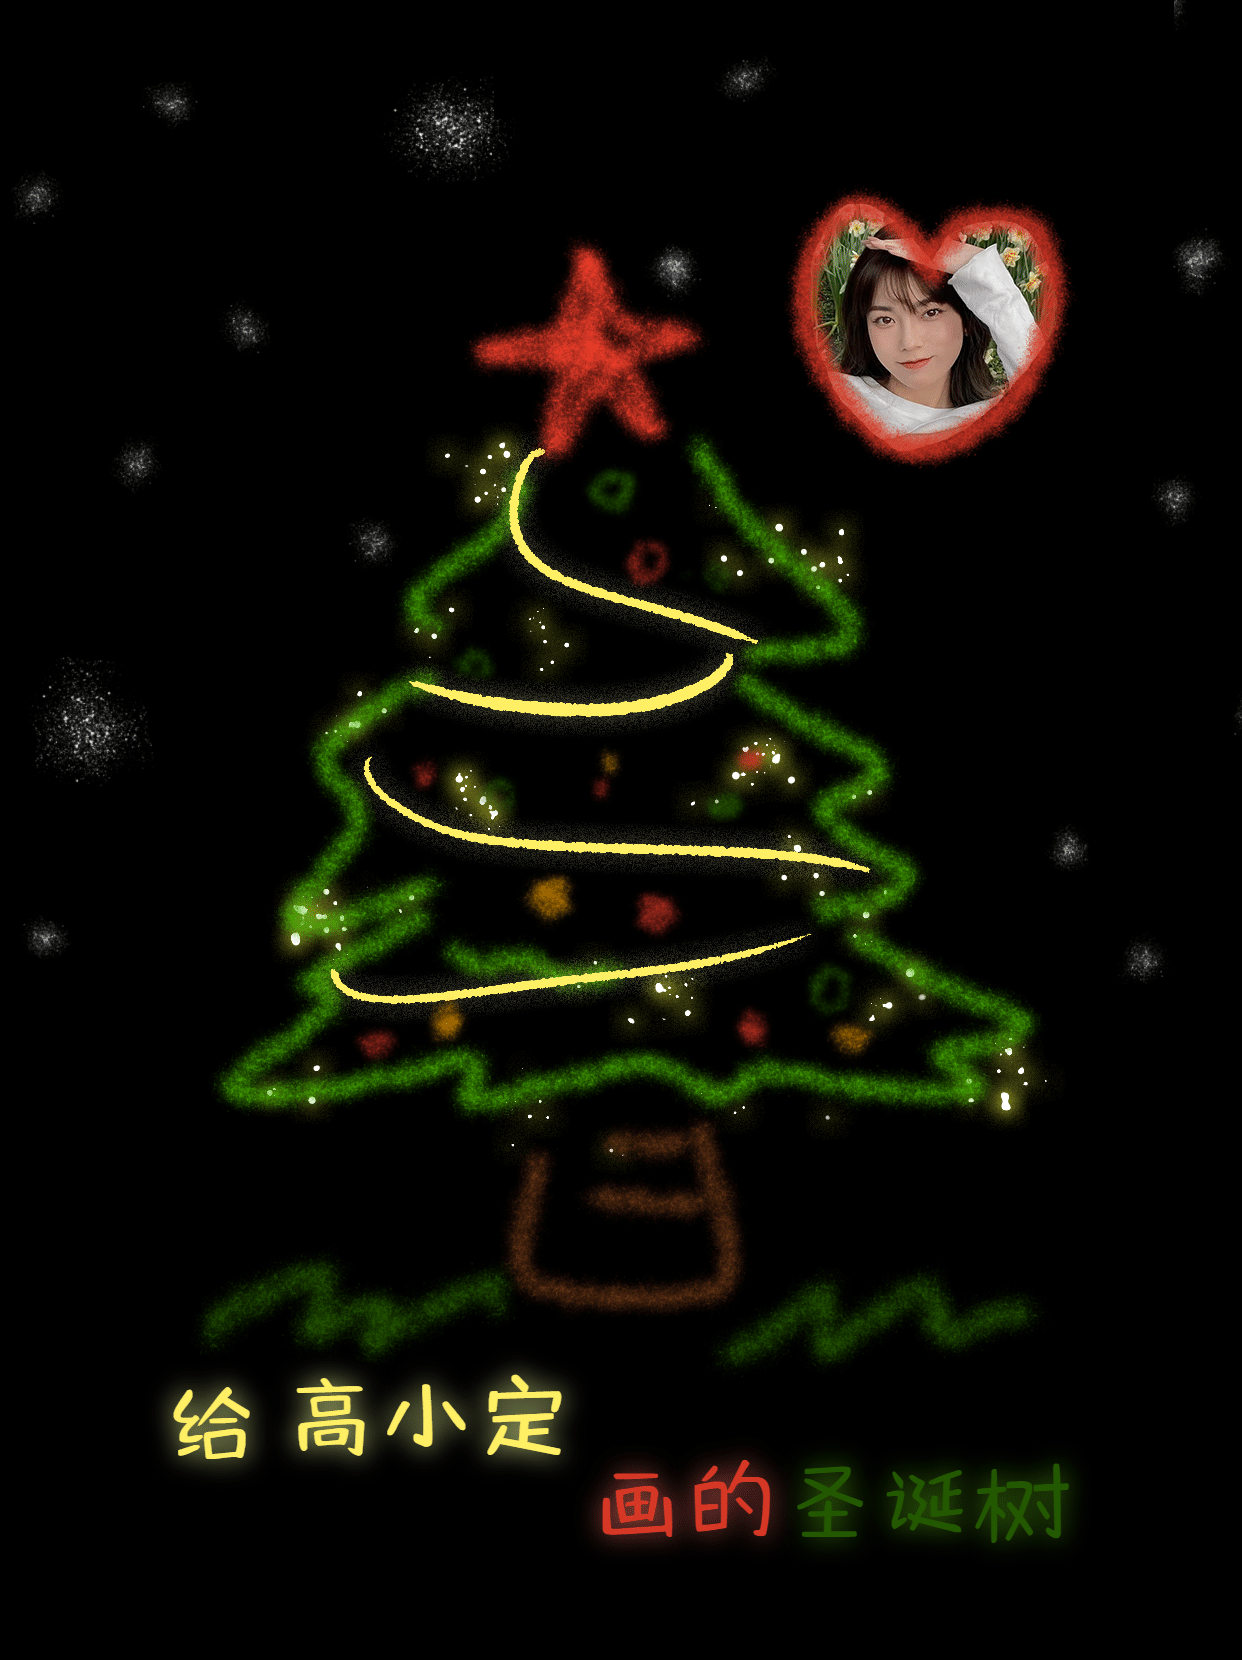 圣诞圣诞树送你一个颗圣诞树趣味小红书配图预览效果